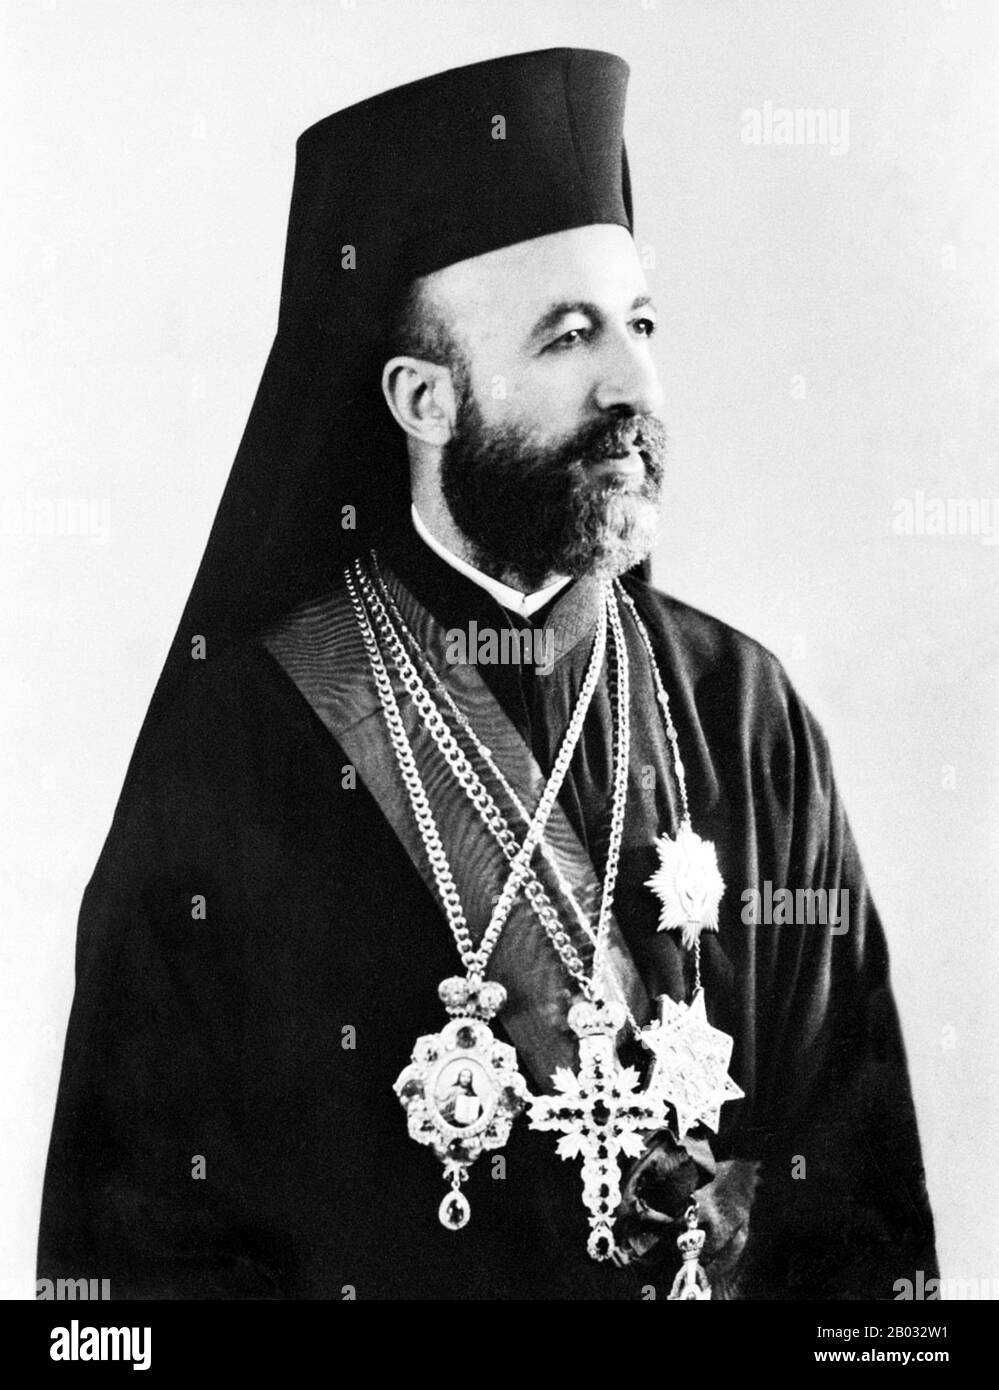 Makarios III., geboren als Michail Christodoulou Mouskos (13. August 1913 - 3. August 1977), war Erzbischof und Primas der autokephalen Kirche Zyperns, einer Griechisch-orthodoxen Kirche (1950-1977), und der erste Präsident der Republik Zypern (1960-1974 und 1974-1977). In seinen drei Amtszeiten als Präsident Zyperns (1960-1977) überlebte er vier Mordanschläge und einen Putsch von 1974. Stockfoto